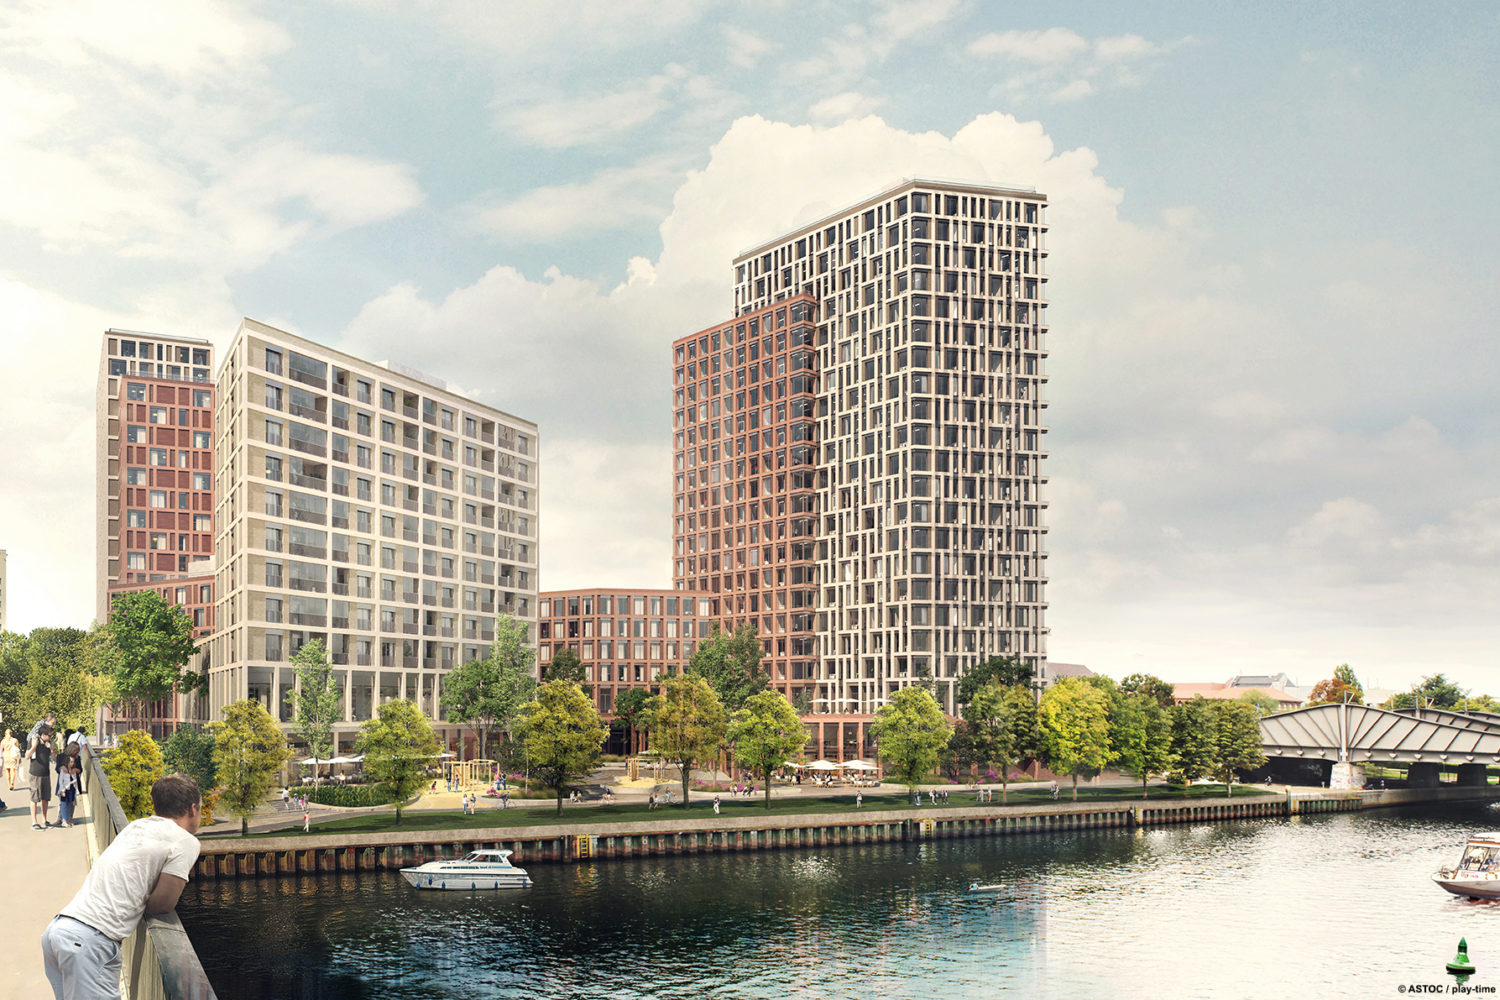 Bauprojekte Berlin: Urban in Spandau, so soll das neue Quartier am Havelufer aussehen. Foto: Astoc/Playtime